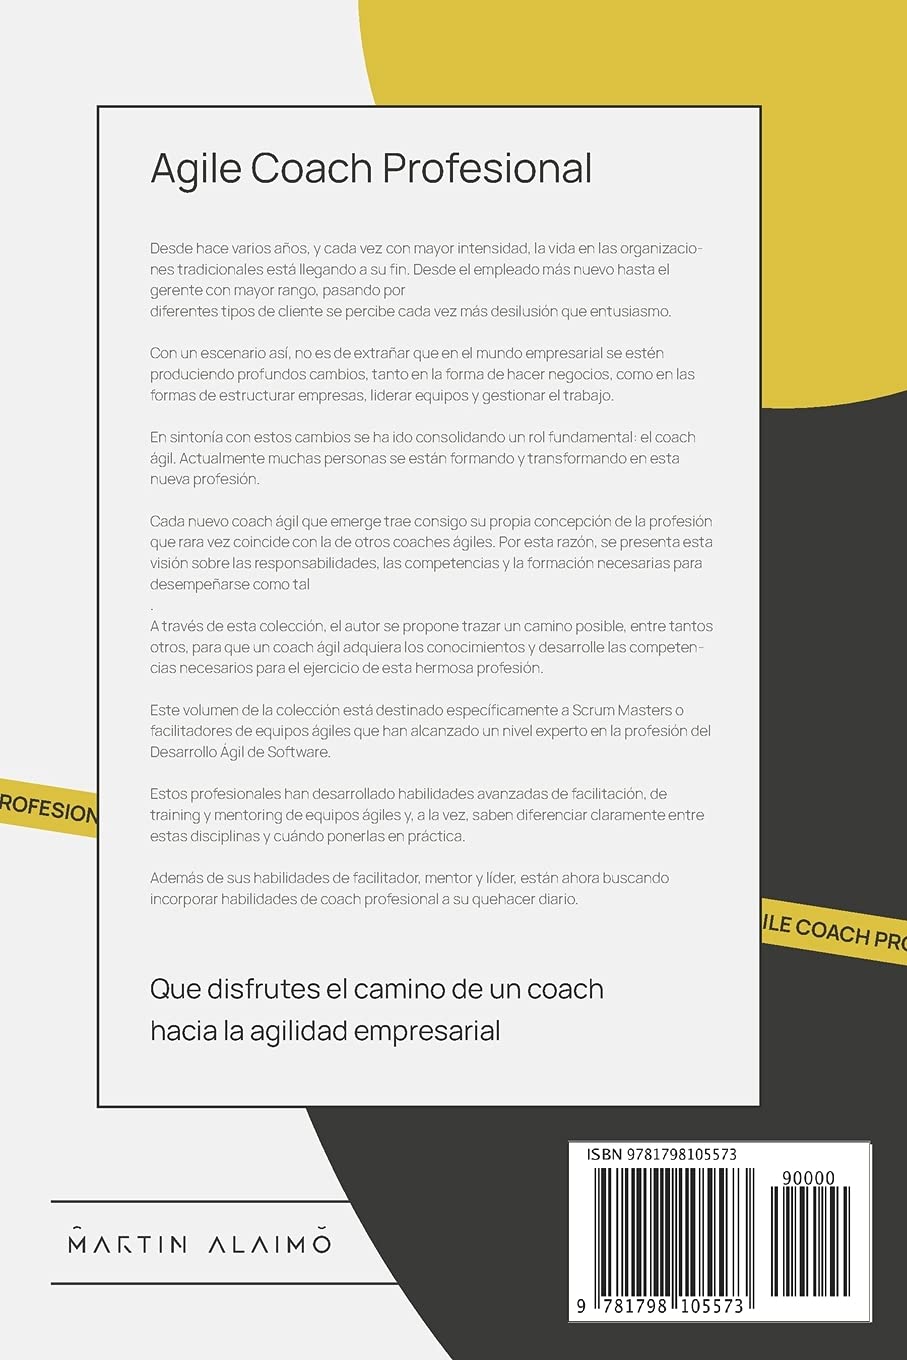 Agile Coach Profesional | El camino de un coach hacia la agilidad empresarial